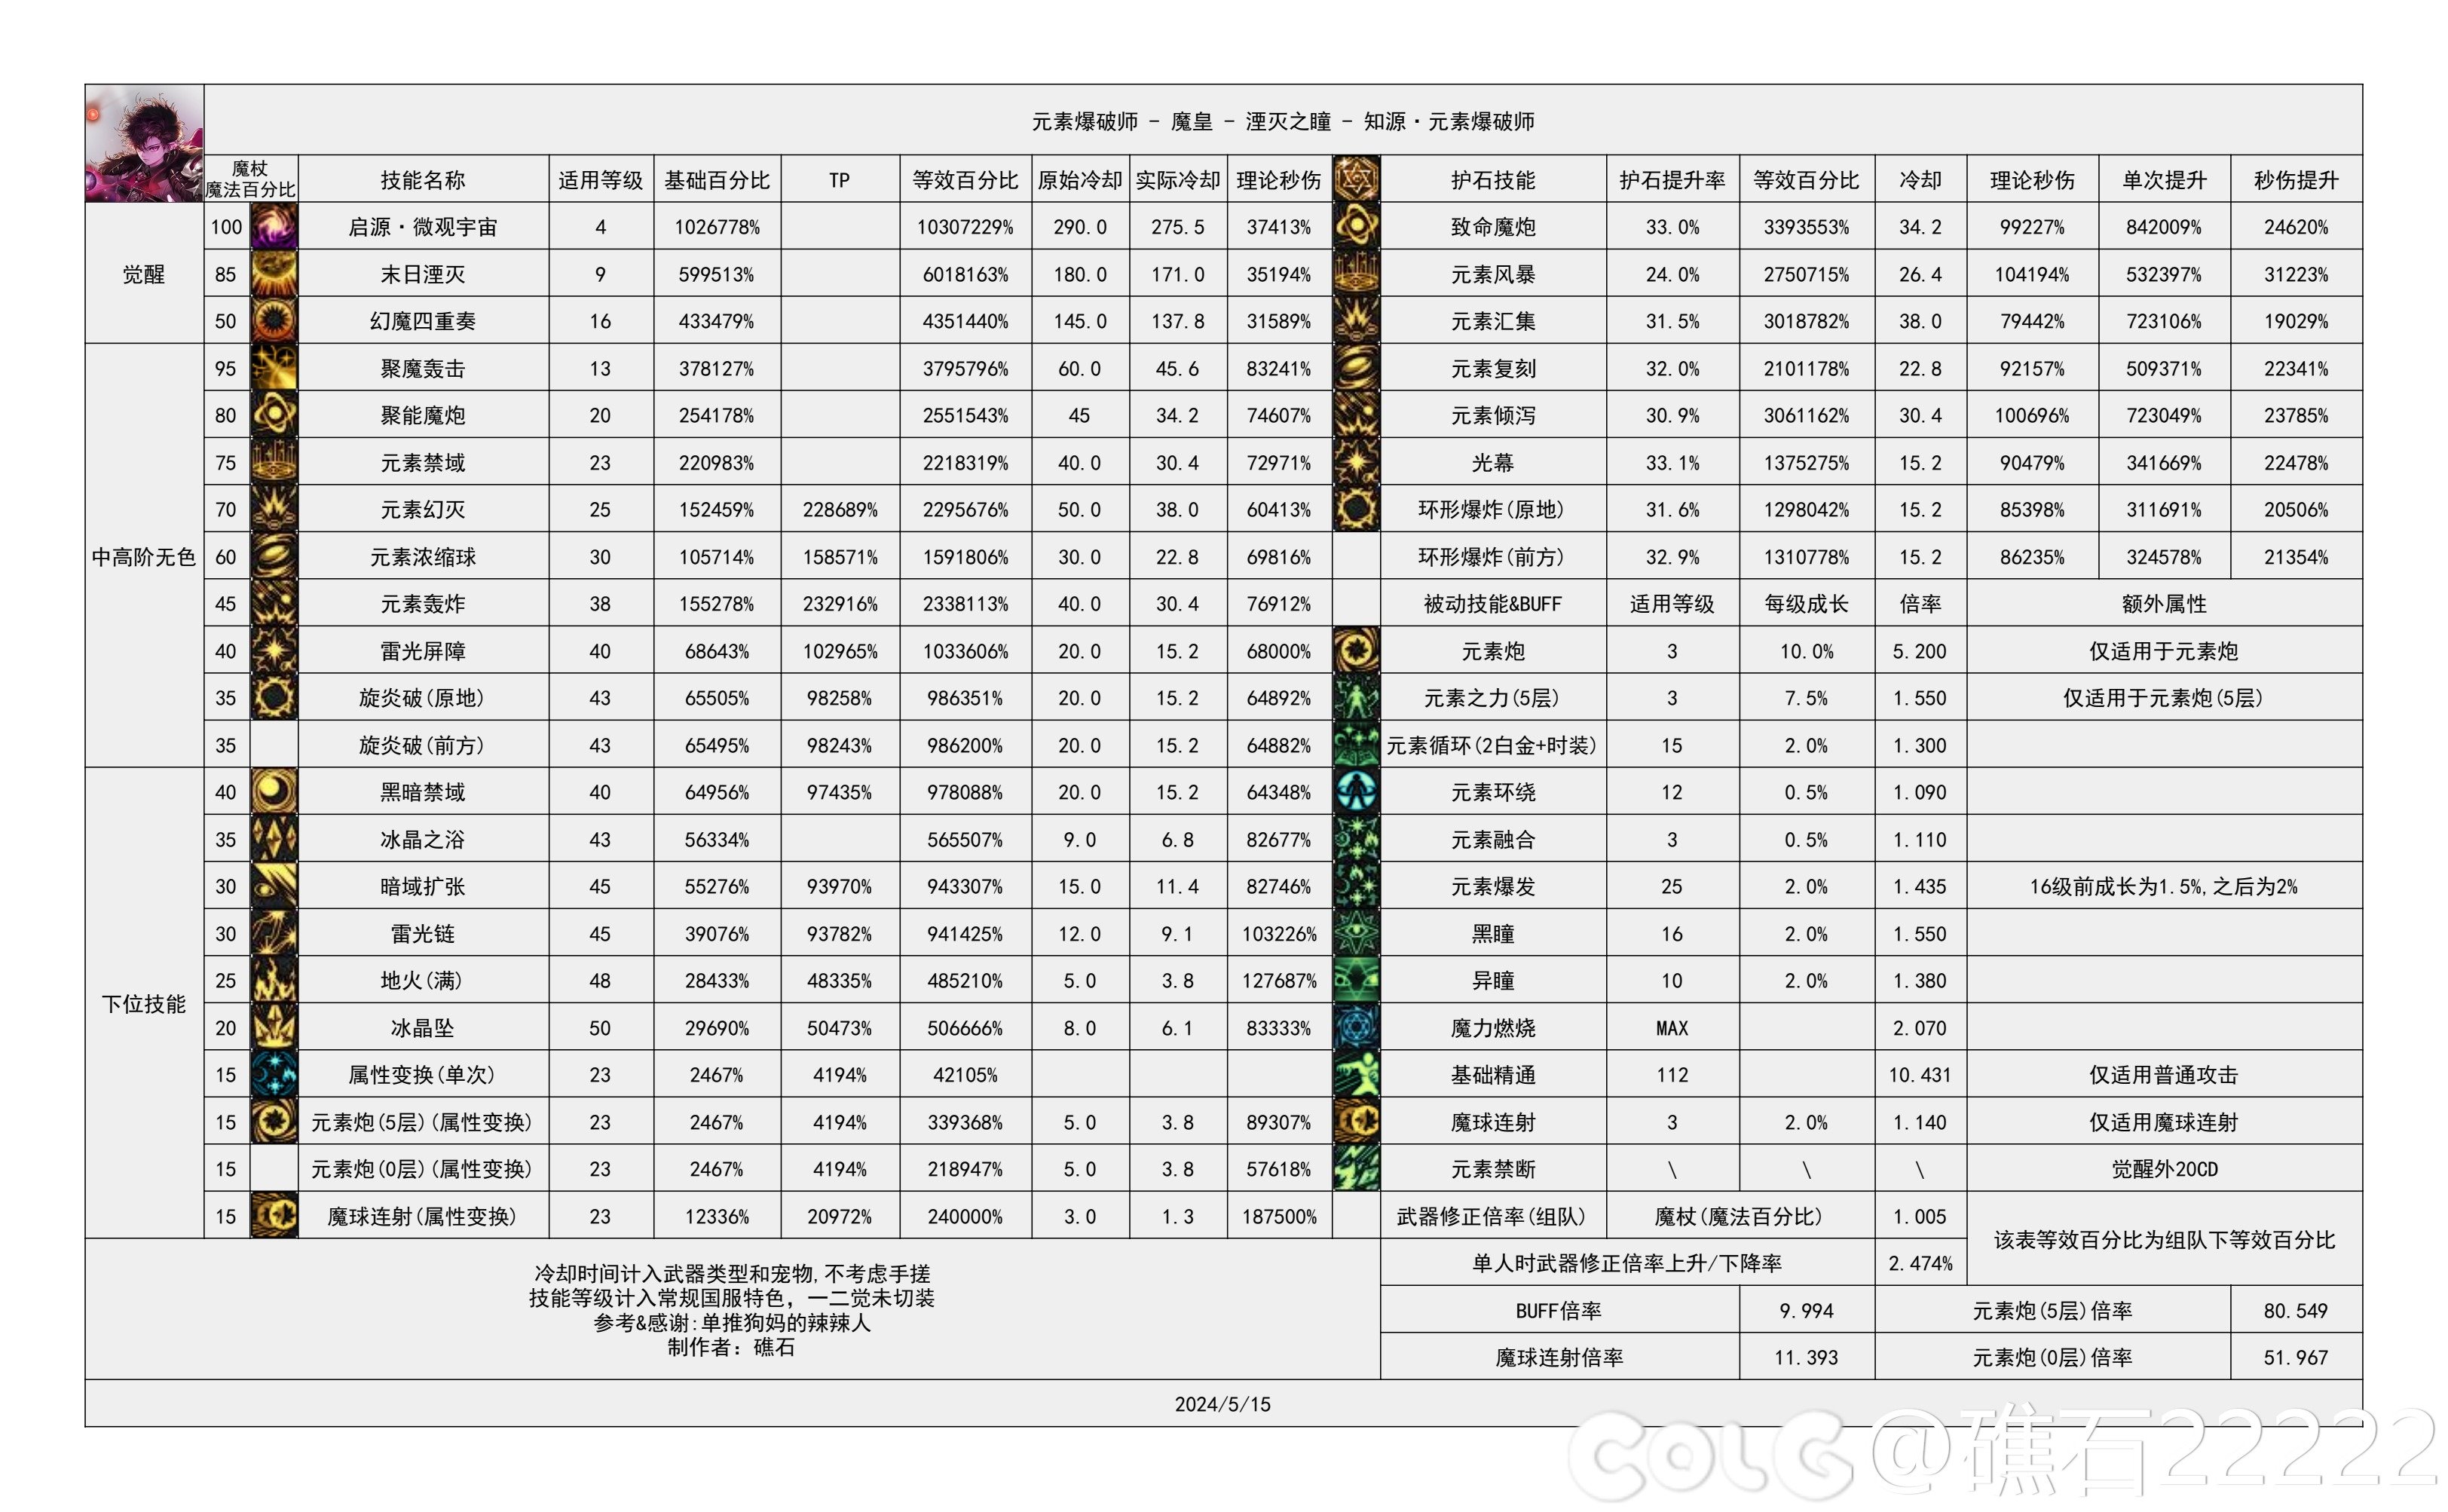 【国服现状】110版本输出职业数据表(国正5.15)(存档)39